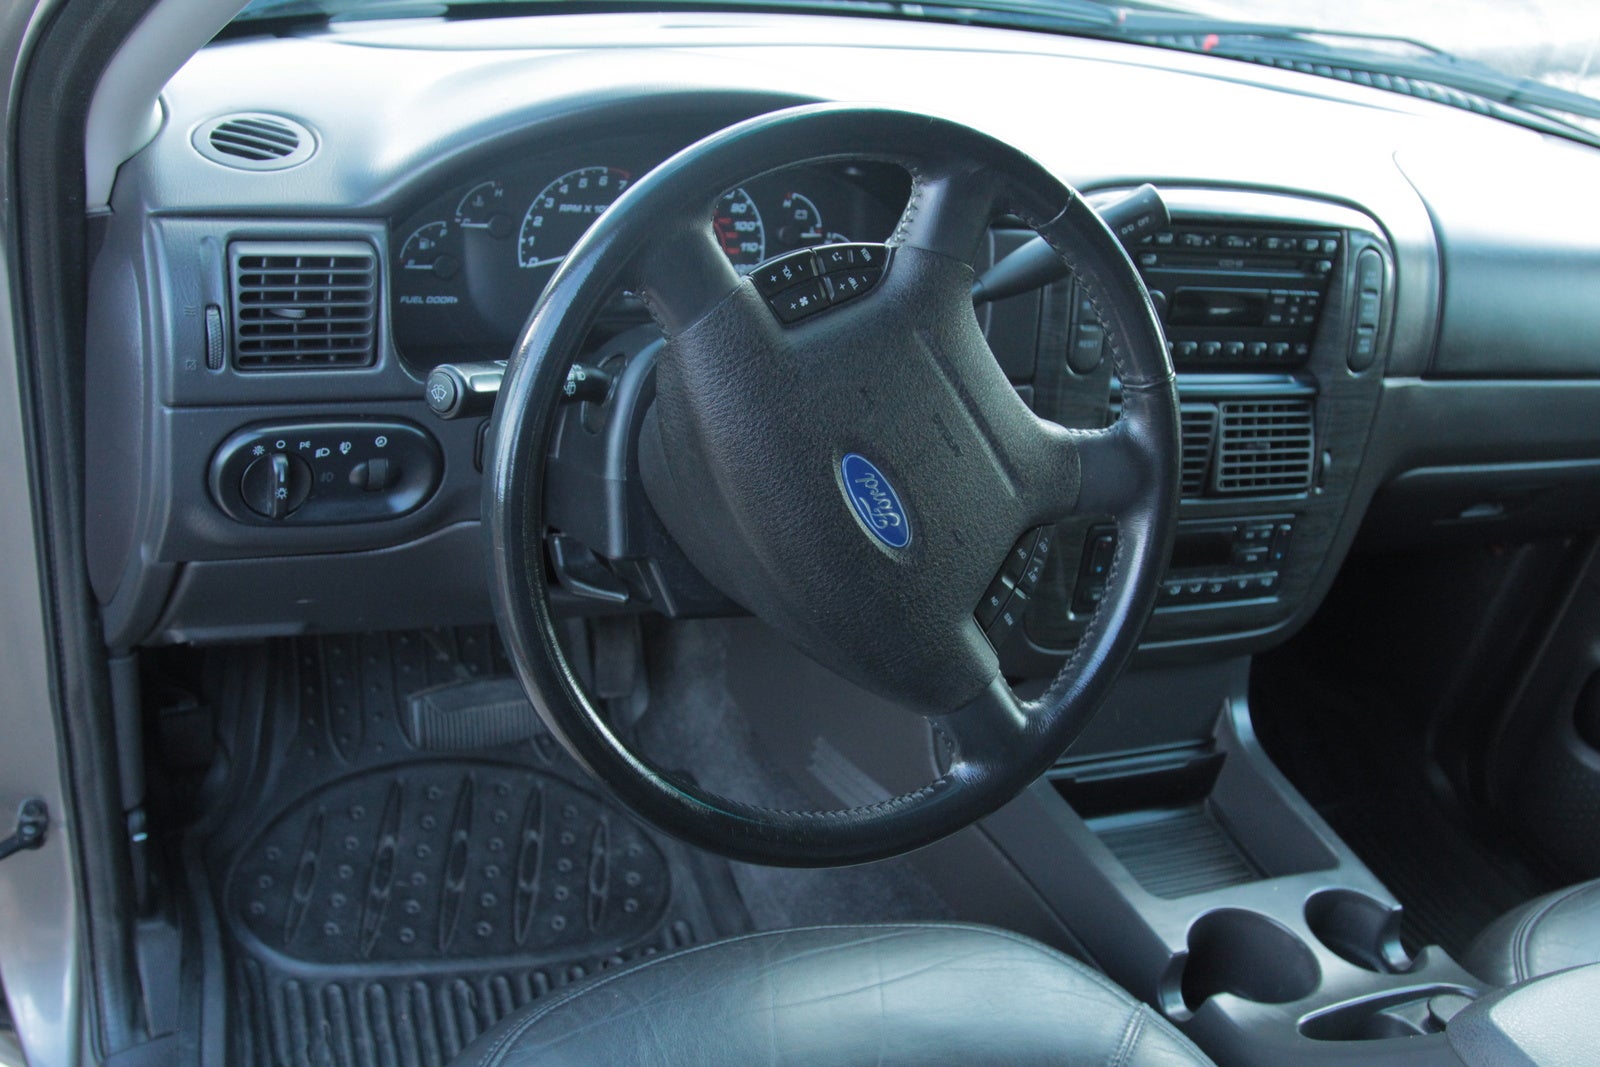 2002 Ford Explorer Interior Pictures CarGurus.